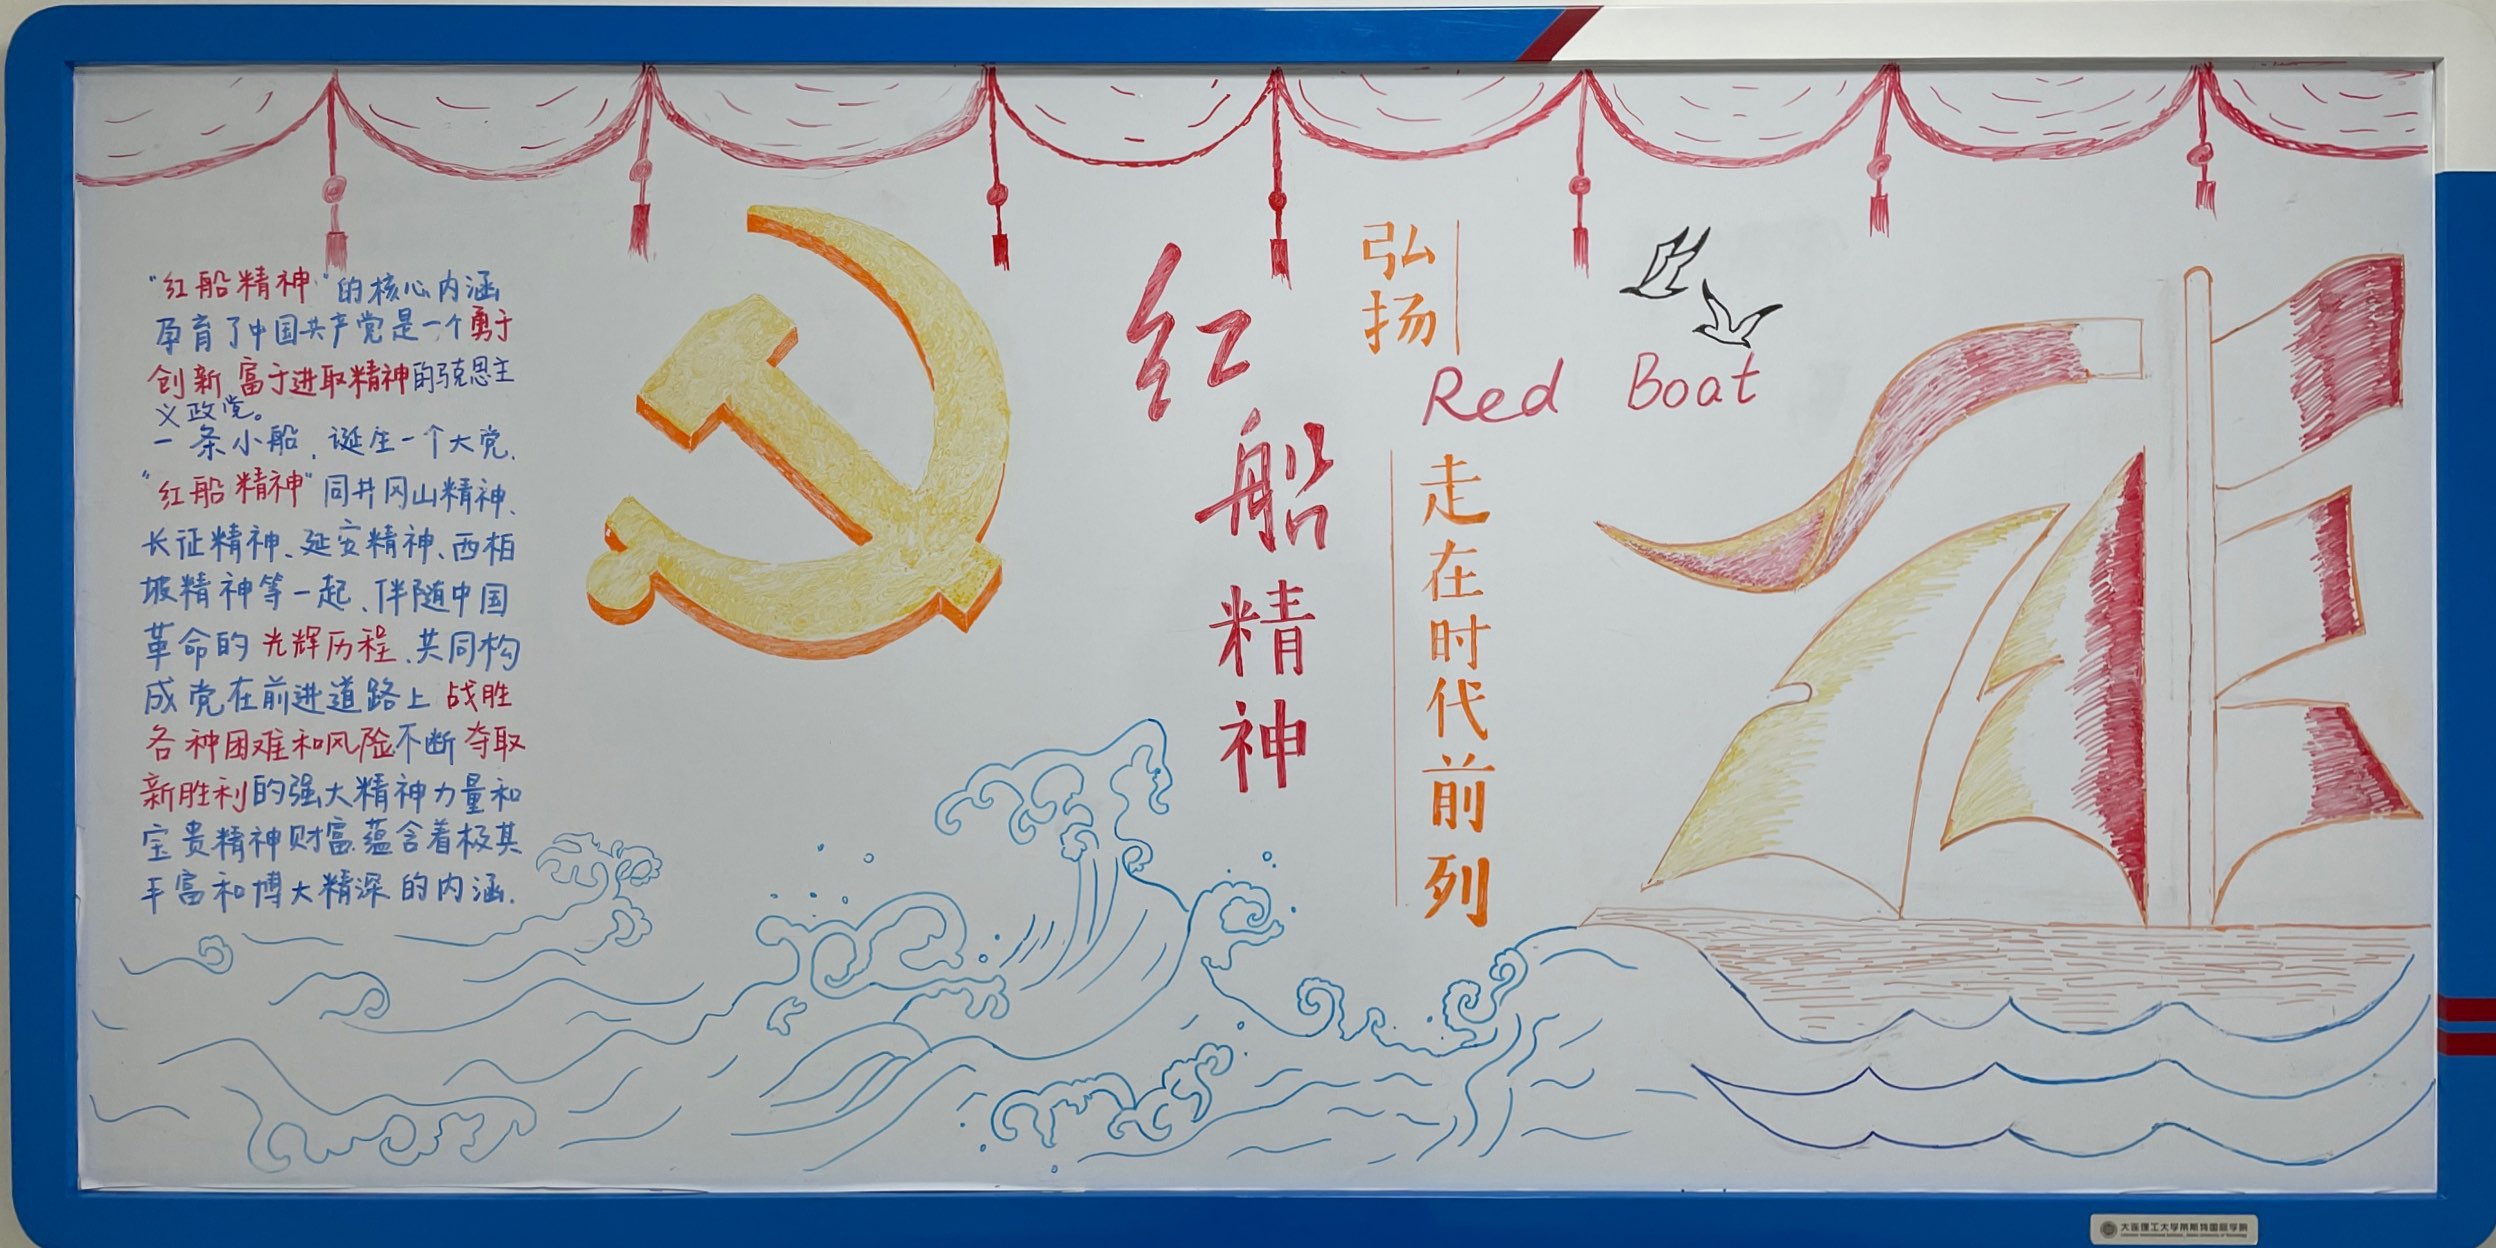 绘中国精神让红色记忆活起来莱斯特国际学院共画党史主题板报设计活动